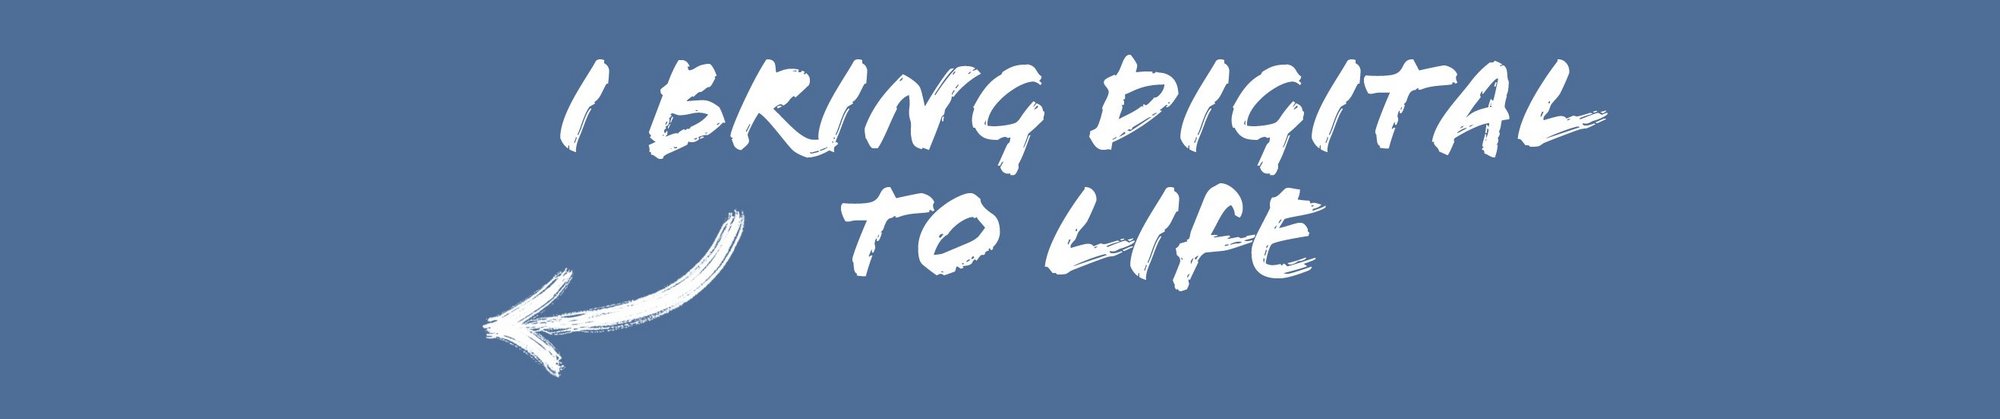 Coverbillede med slogan "Cand.it. - bring digital to life" og pil, blå baggrund.